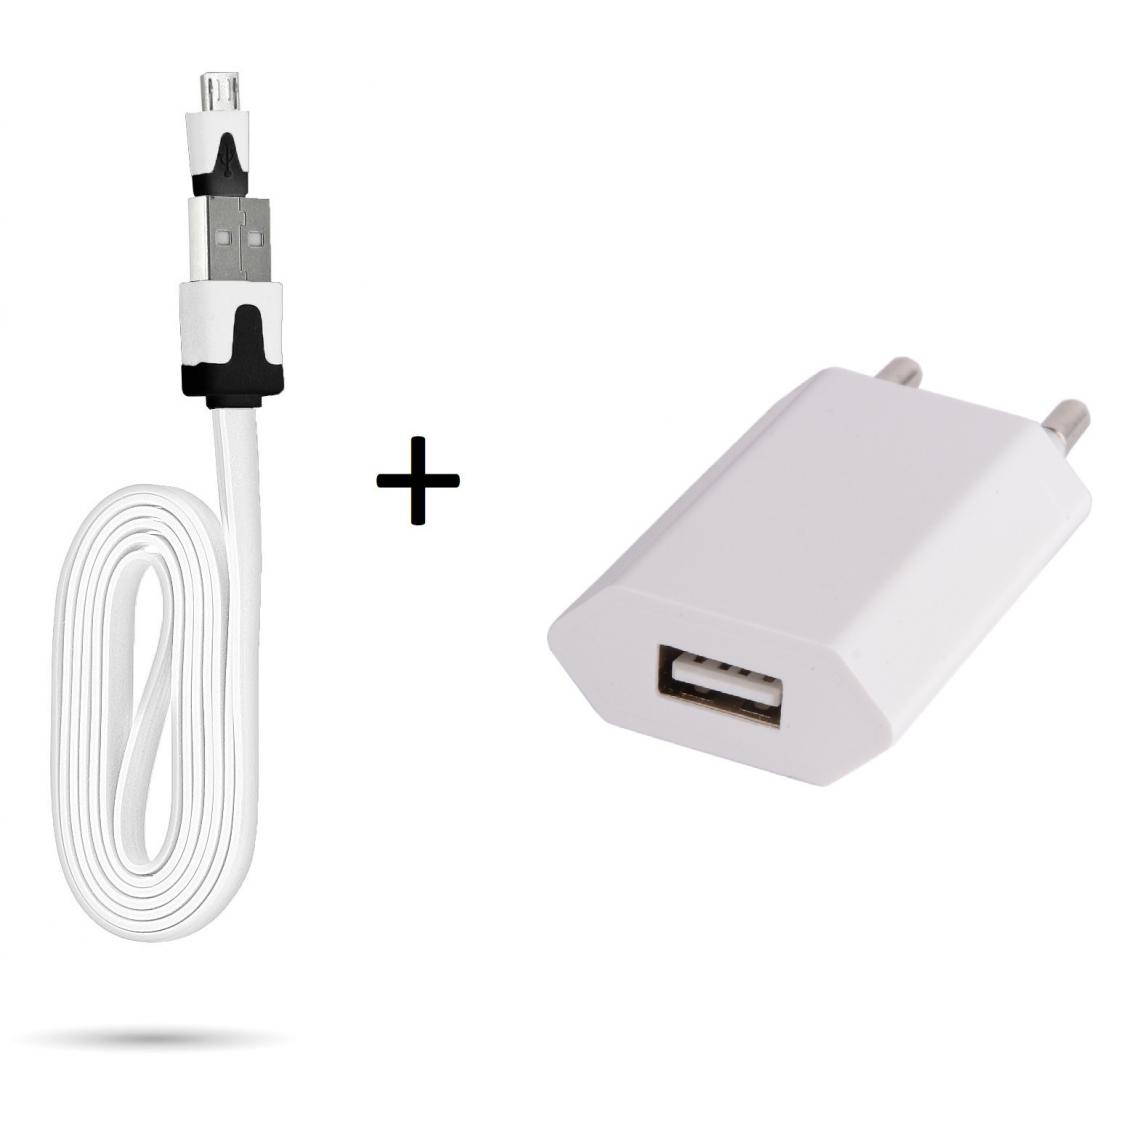 Shot - Cable Noodle 1m Chargeur + Prise Secteur pour WIKO View 3 Lite Smartphone Micro USB Murale Pack Android (BLANC) - Chargeur secteur téléphone